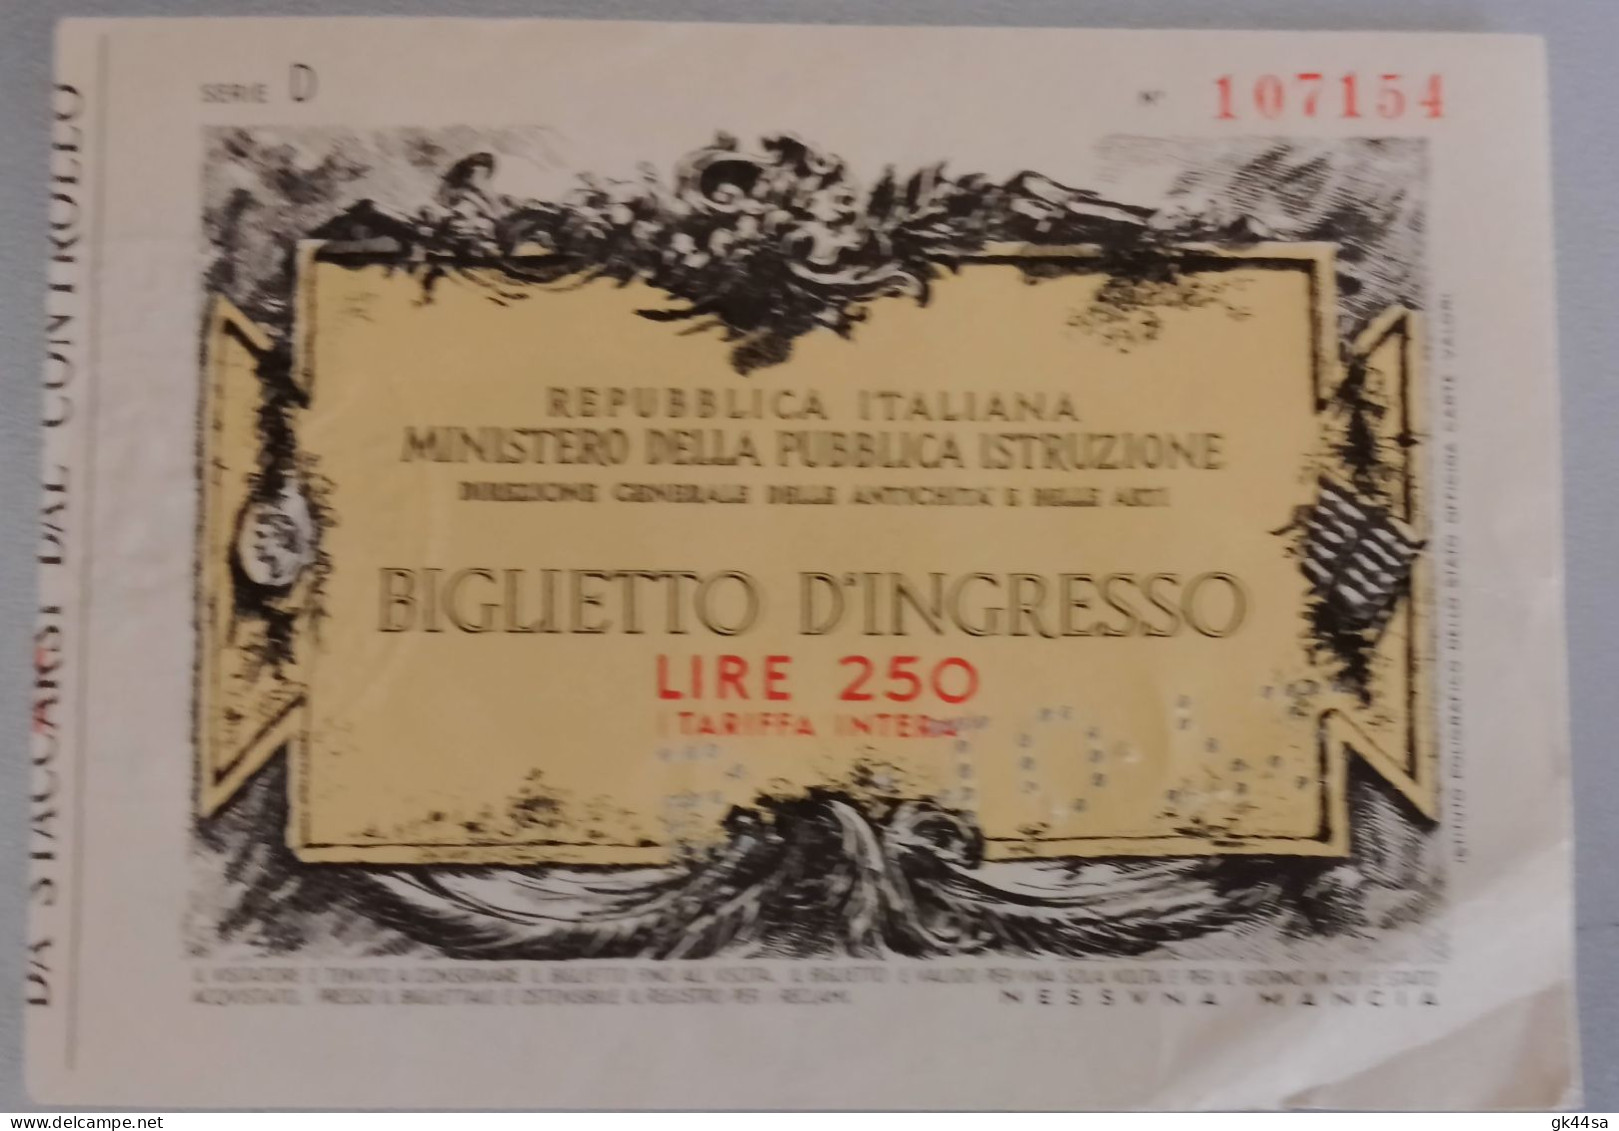 BIGLIETTO D'INGRESSO "MINISTERO DELLA PUBBLICA ISTRUZIONE" LIRE 250 - Eintrittskarten